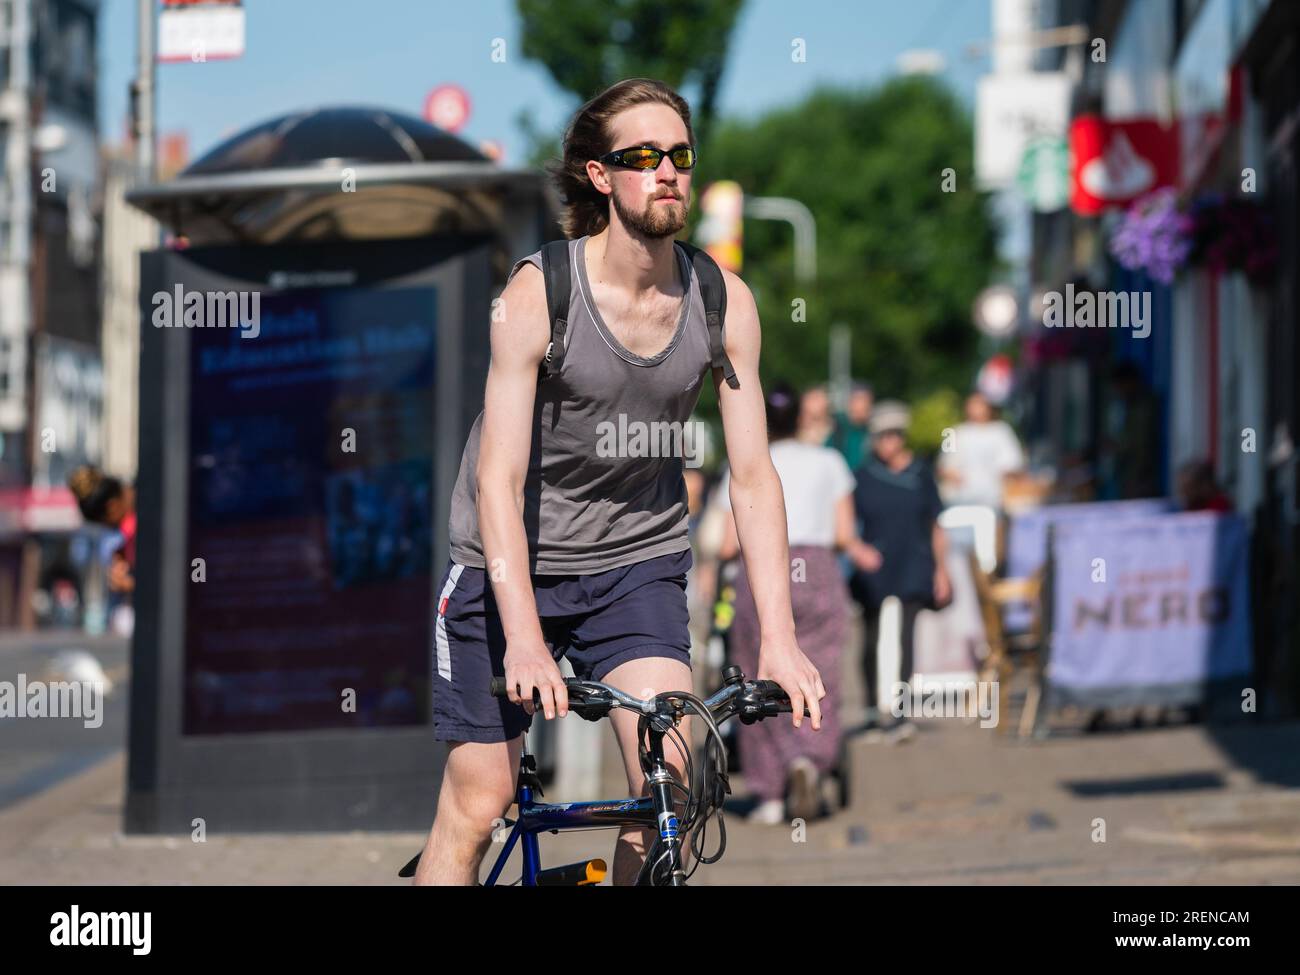 Giovane ciclista maschile, giovane in bicicletta su strada in una città frenetica d'estate, senza indossare il casco, in Inghilterra, Regno Unito. Stile di vita sano. Foto Stock